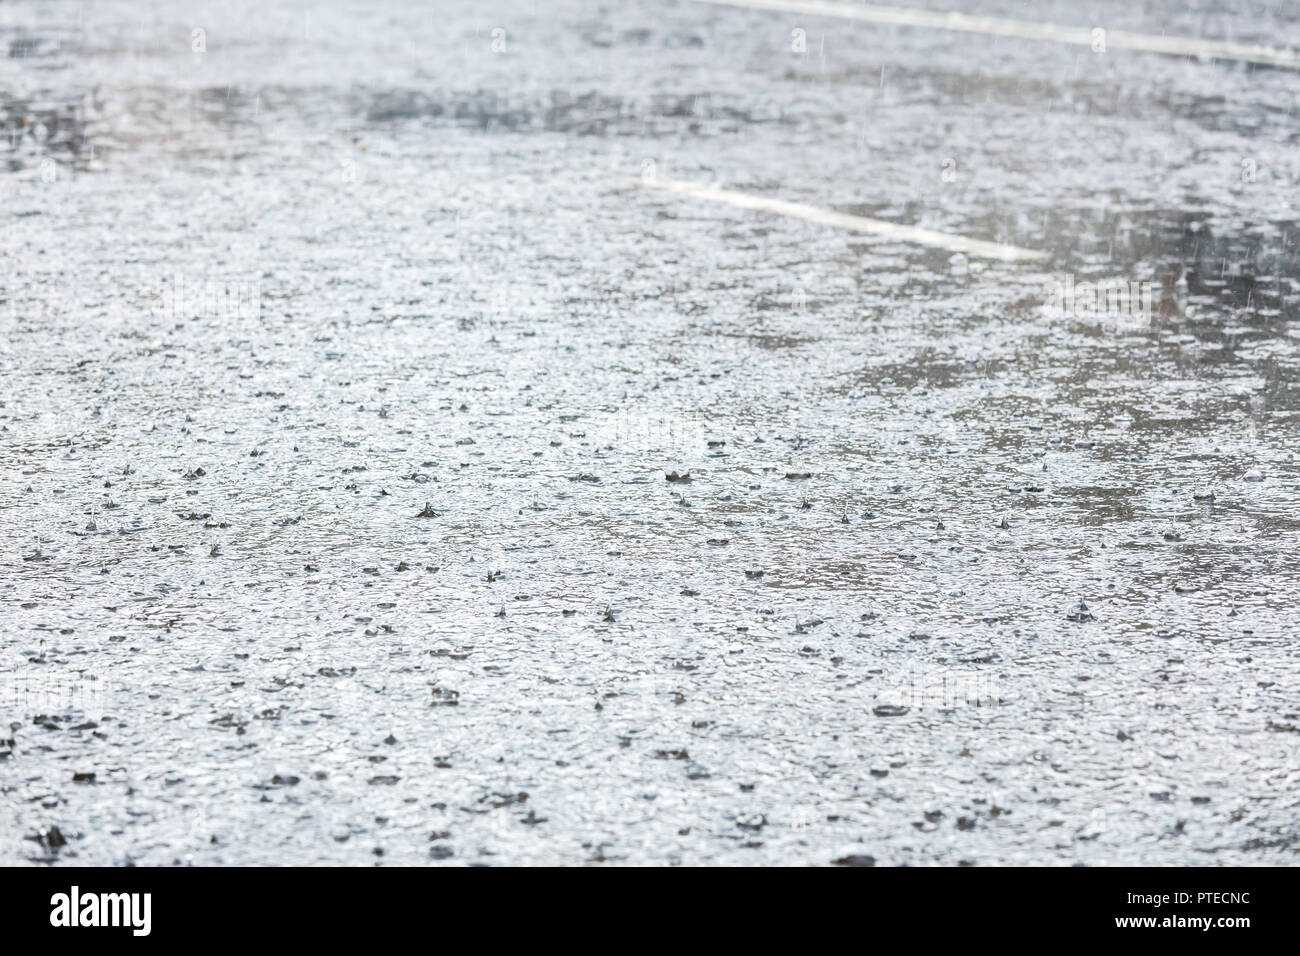 Regen in großen wasserpfütze auf Asphalt City Road plätschern Stockfoto